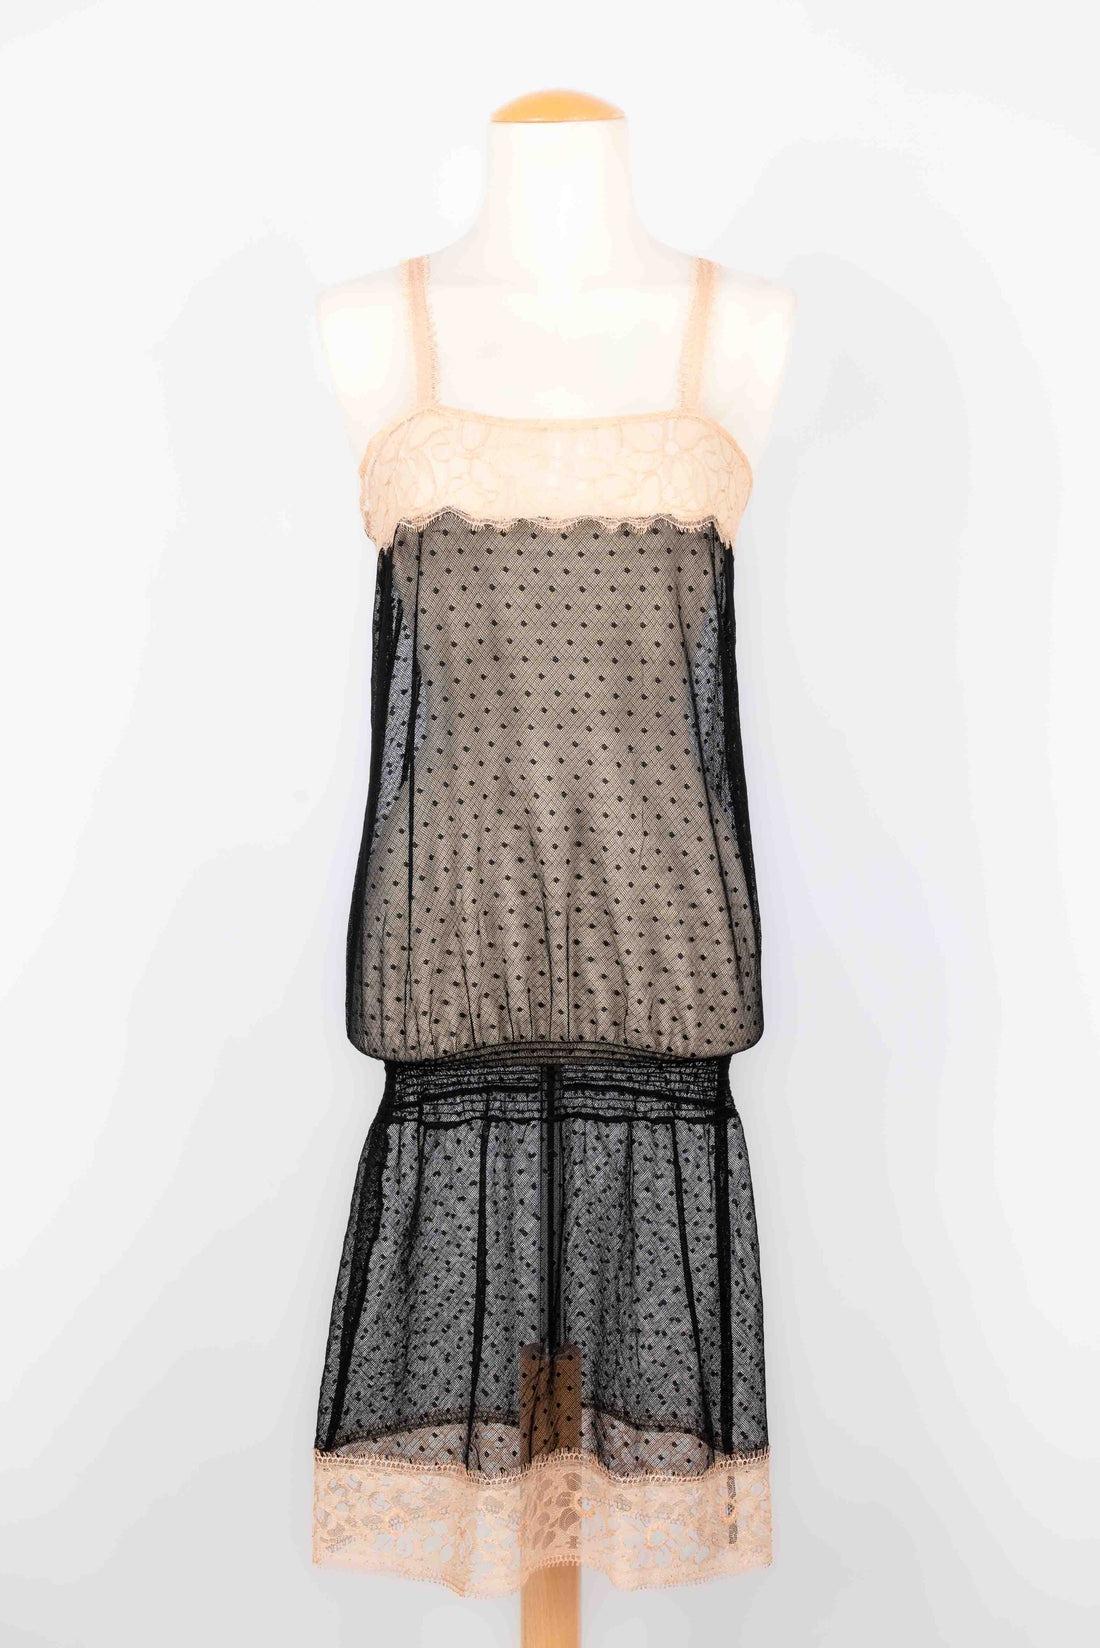 Chanel - Kleid im Babydoll-Stil aus schwarzem Seidenmusselin und beiger Spitze. Unterwäschekleid aus gepunktetem Tüll und beiger Spitze. Keine Größenangabe, es passt eine 34FR/36FR.

Zusätzliche Informationen:
Zustand: Sehr guter